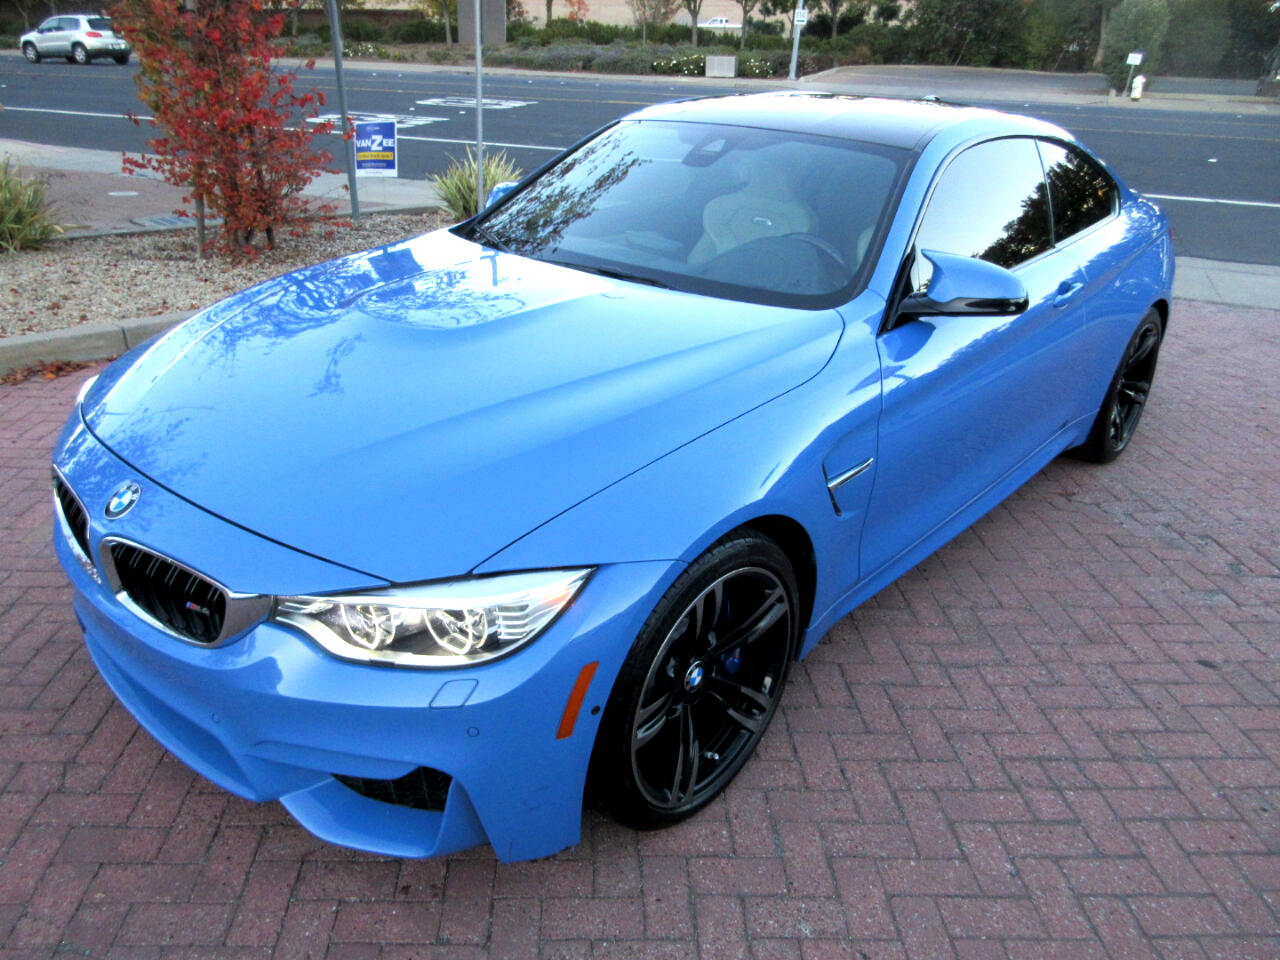 BMW M4  2015